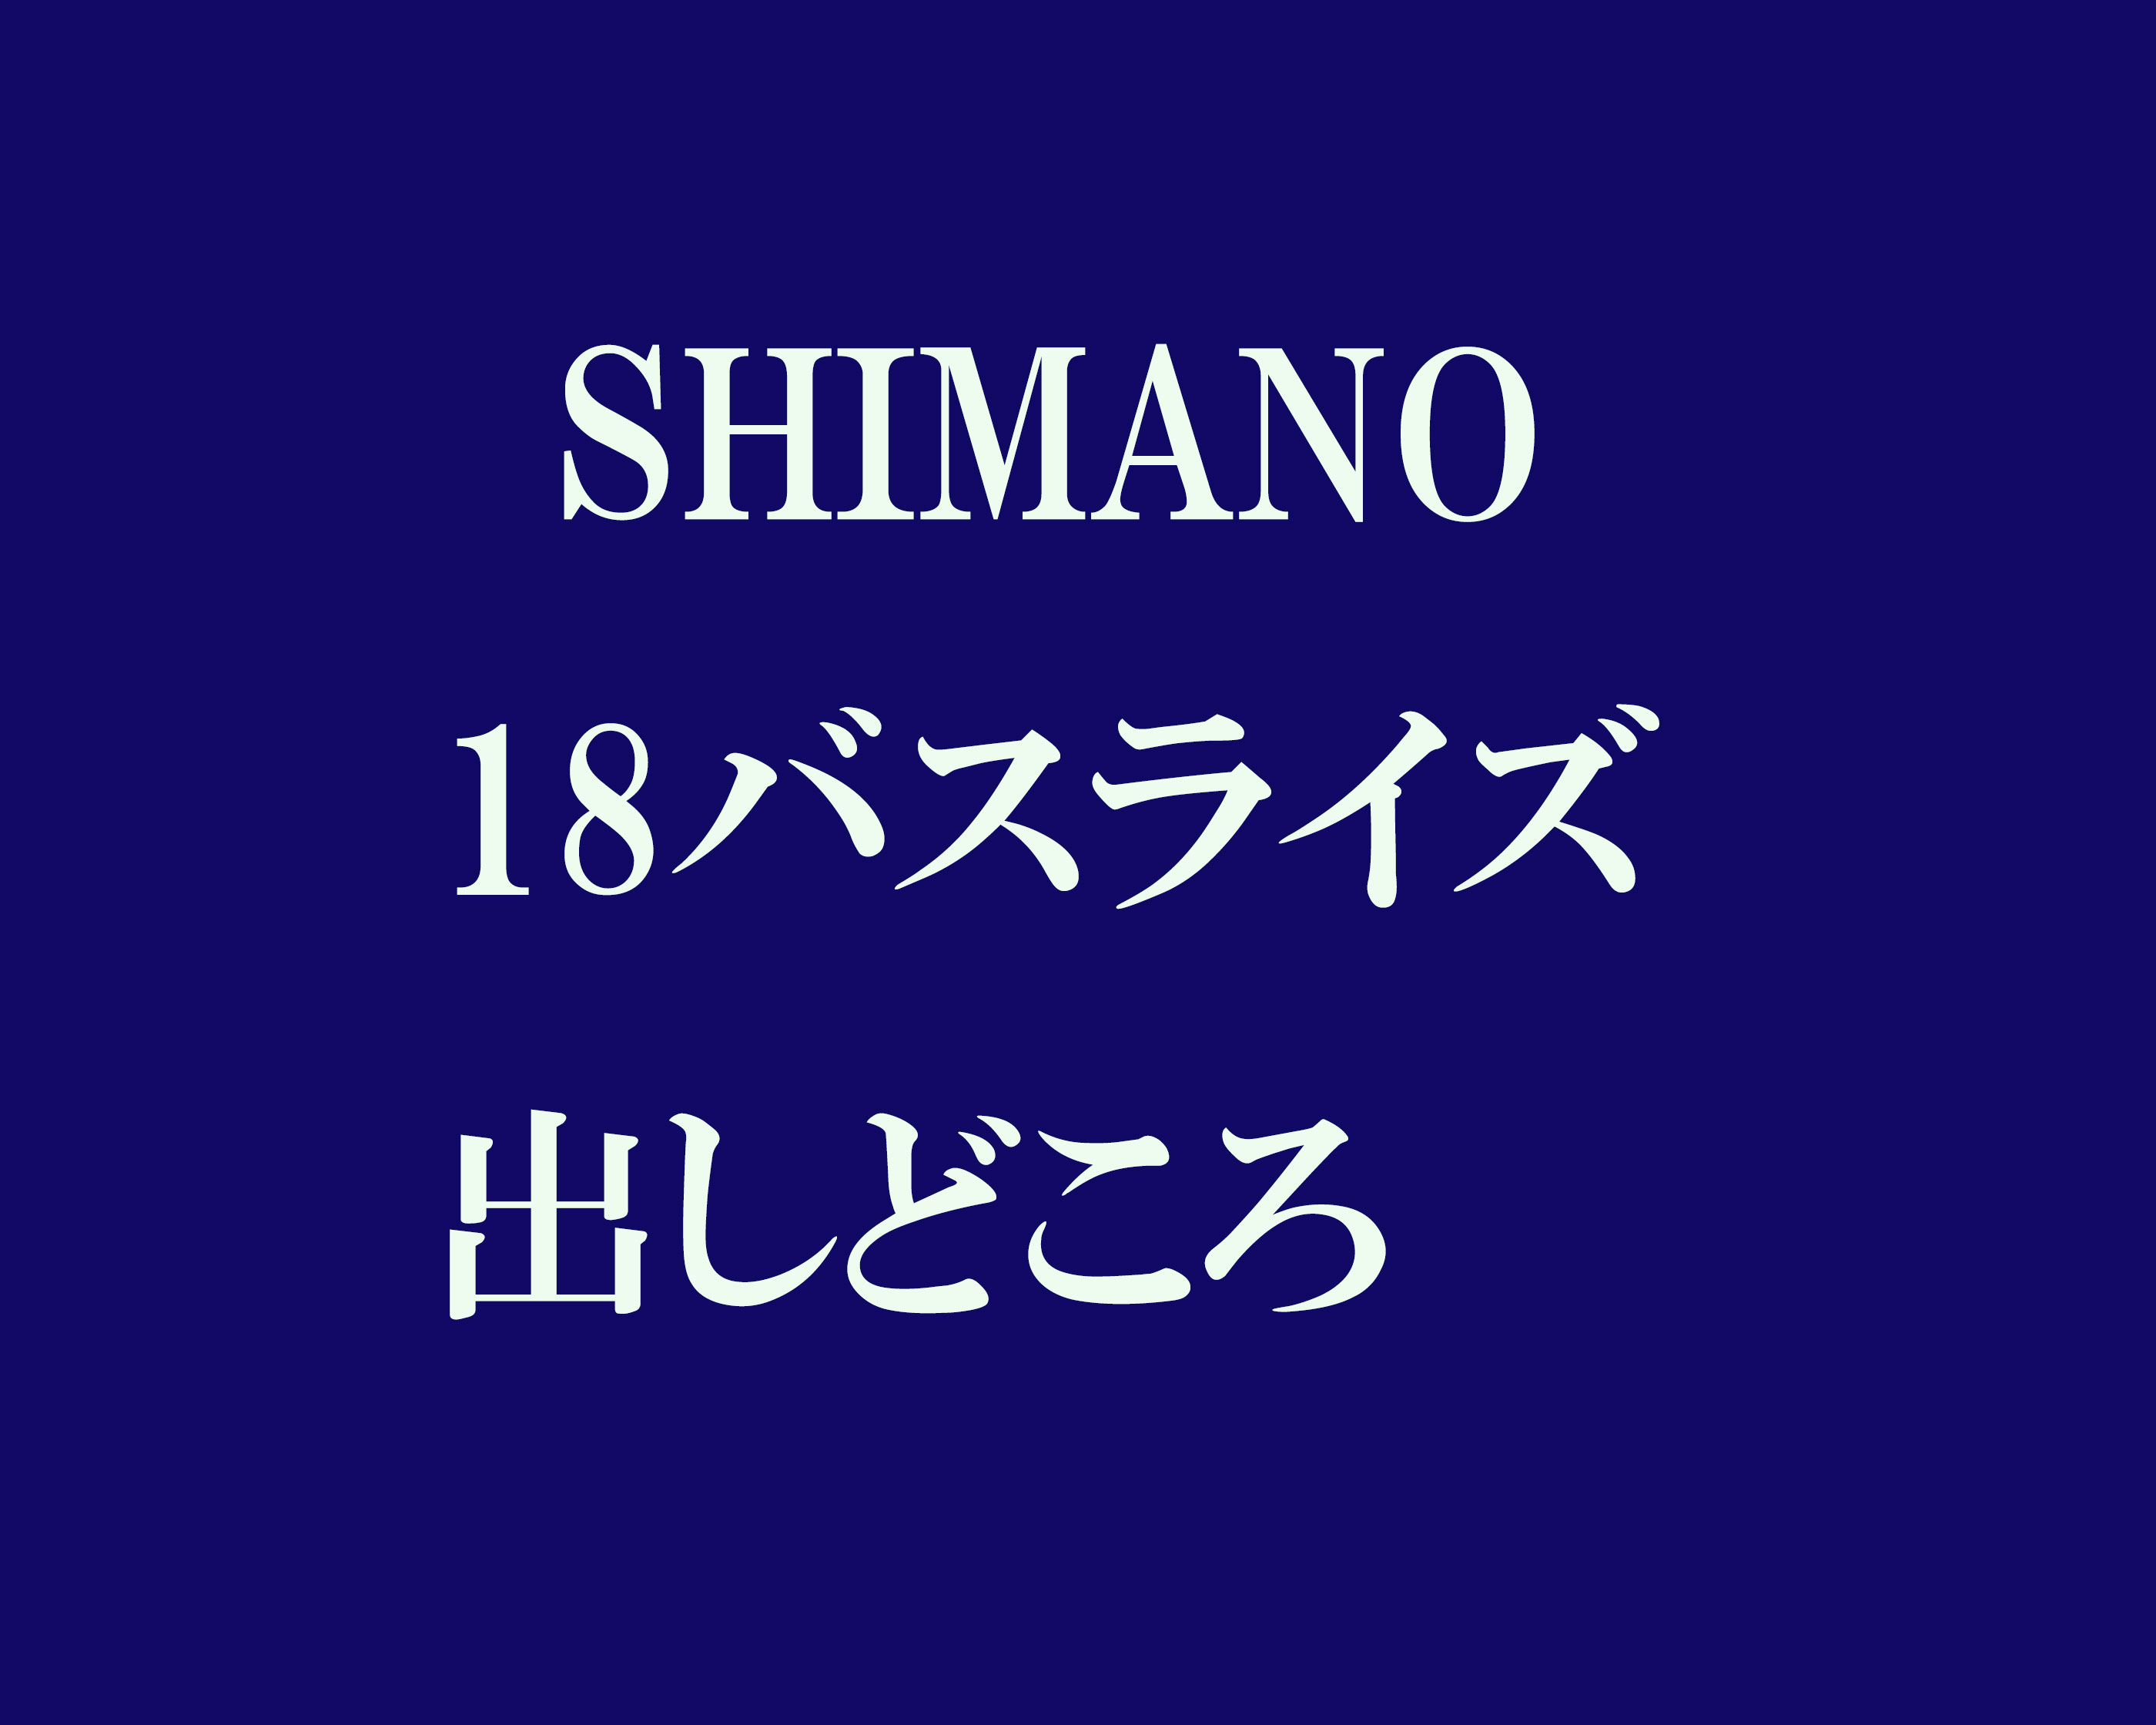 シマノ 18バスライズ 超低価格帯ベイトリールを買う5つの意味とは カケヅカ Kakedzuka